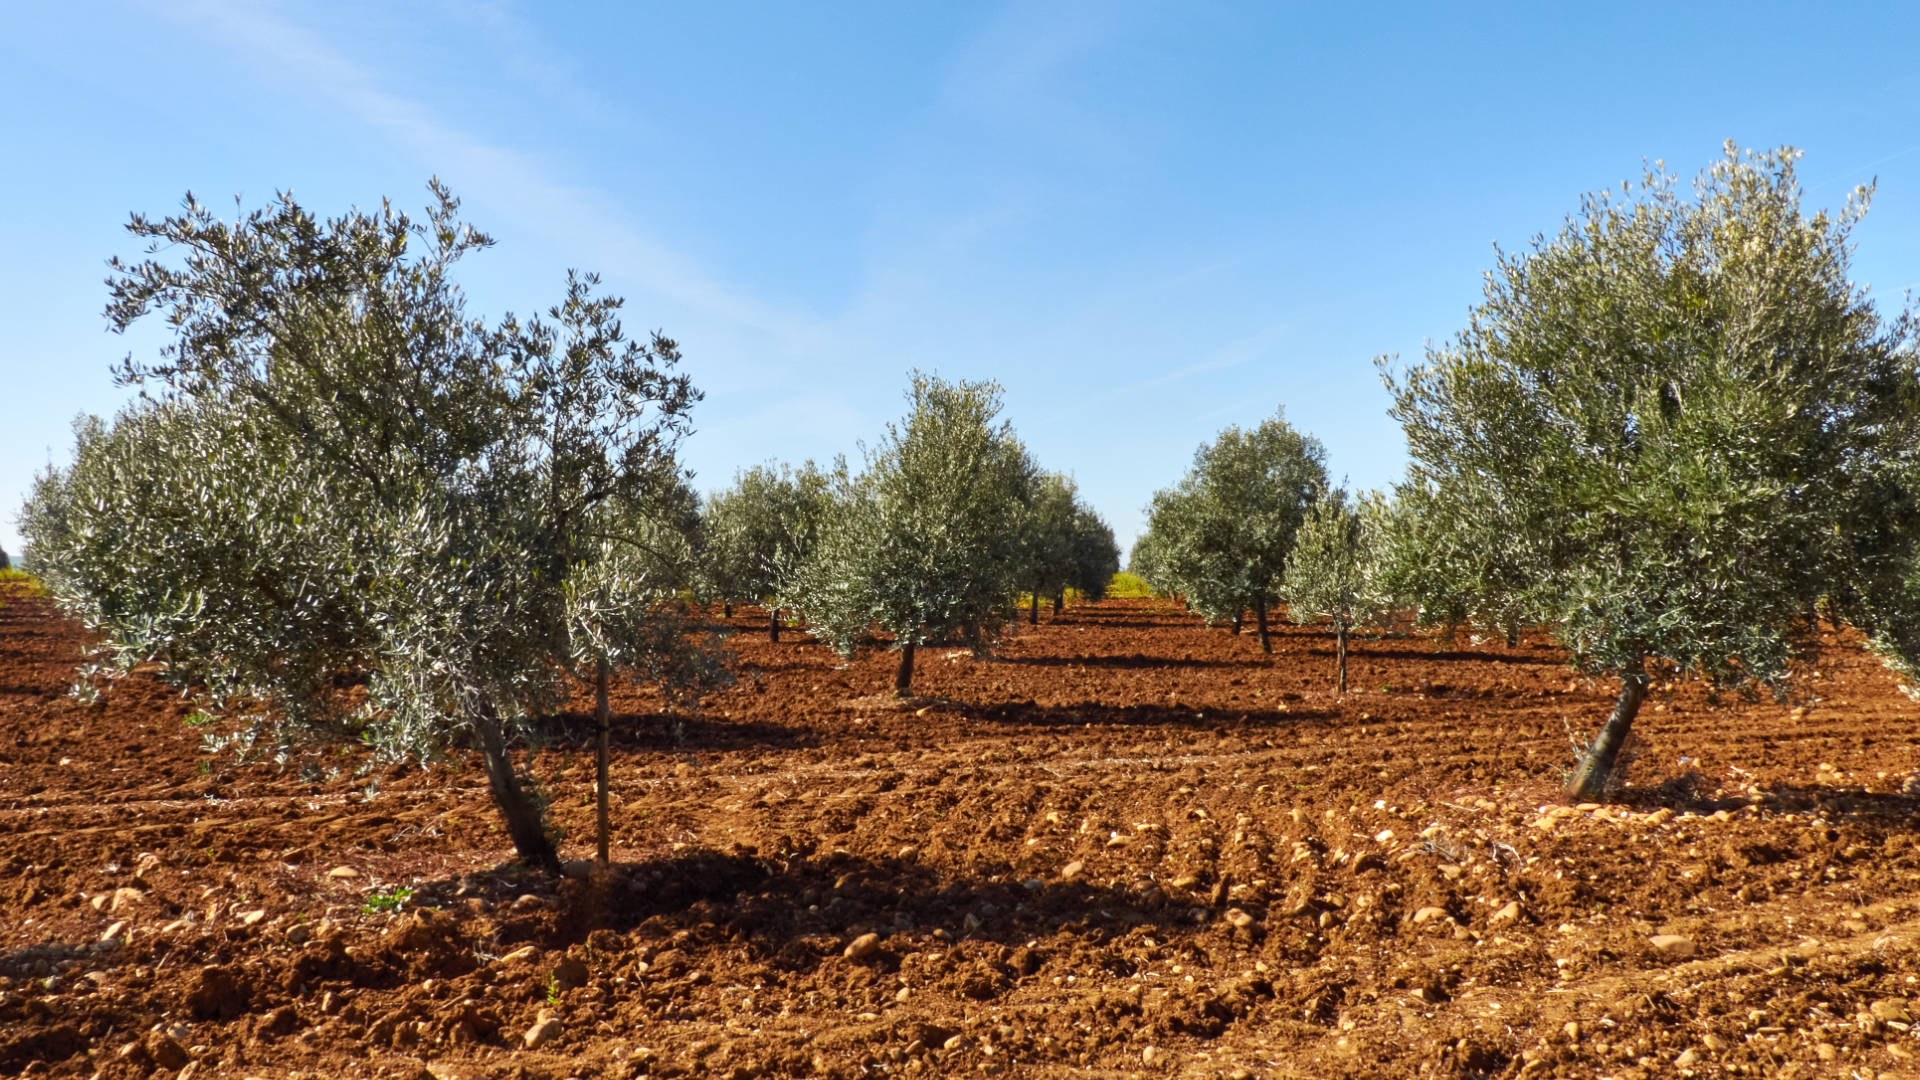 Andalusien – überall Olivenbäume und diese herrliche fruchtbare Erde.